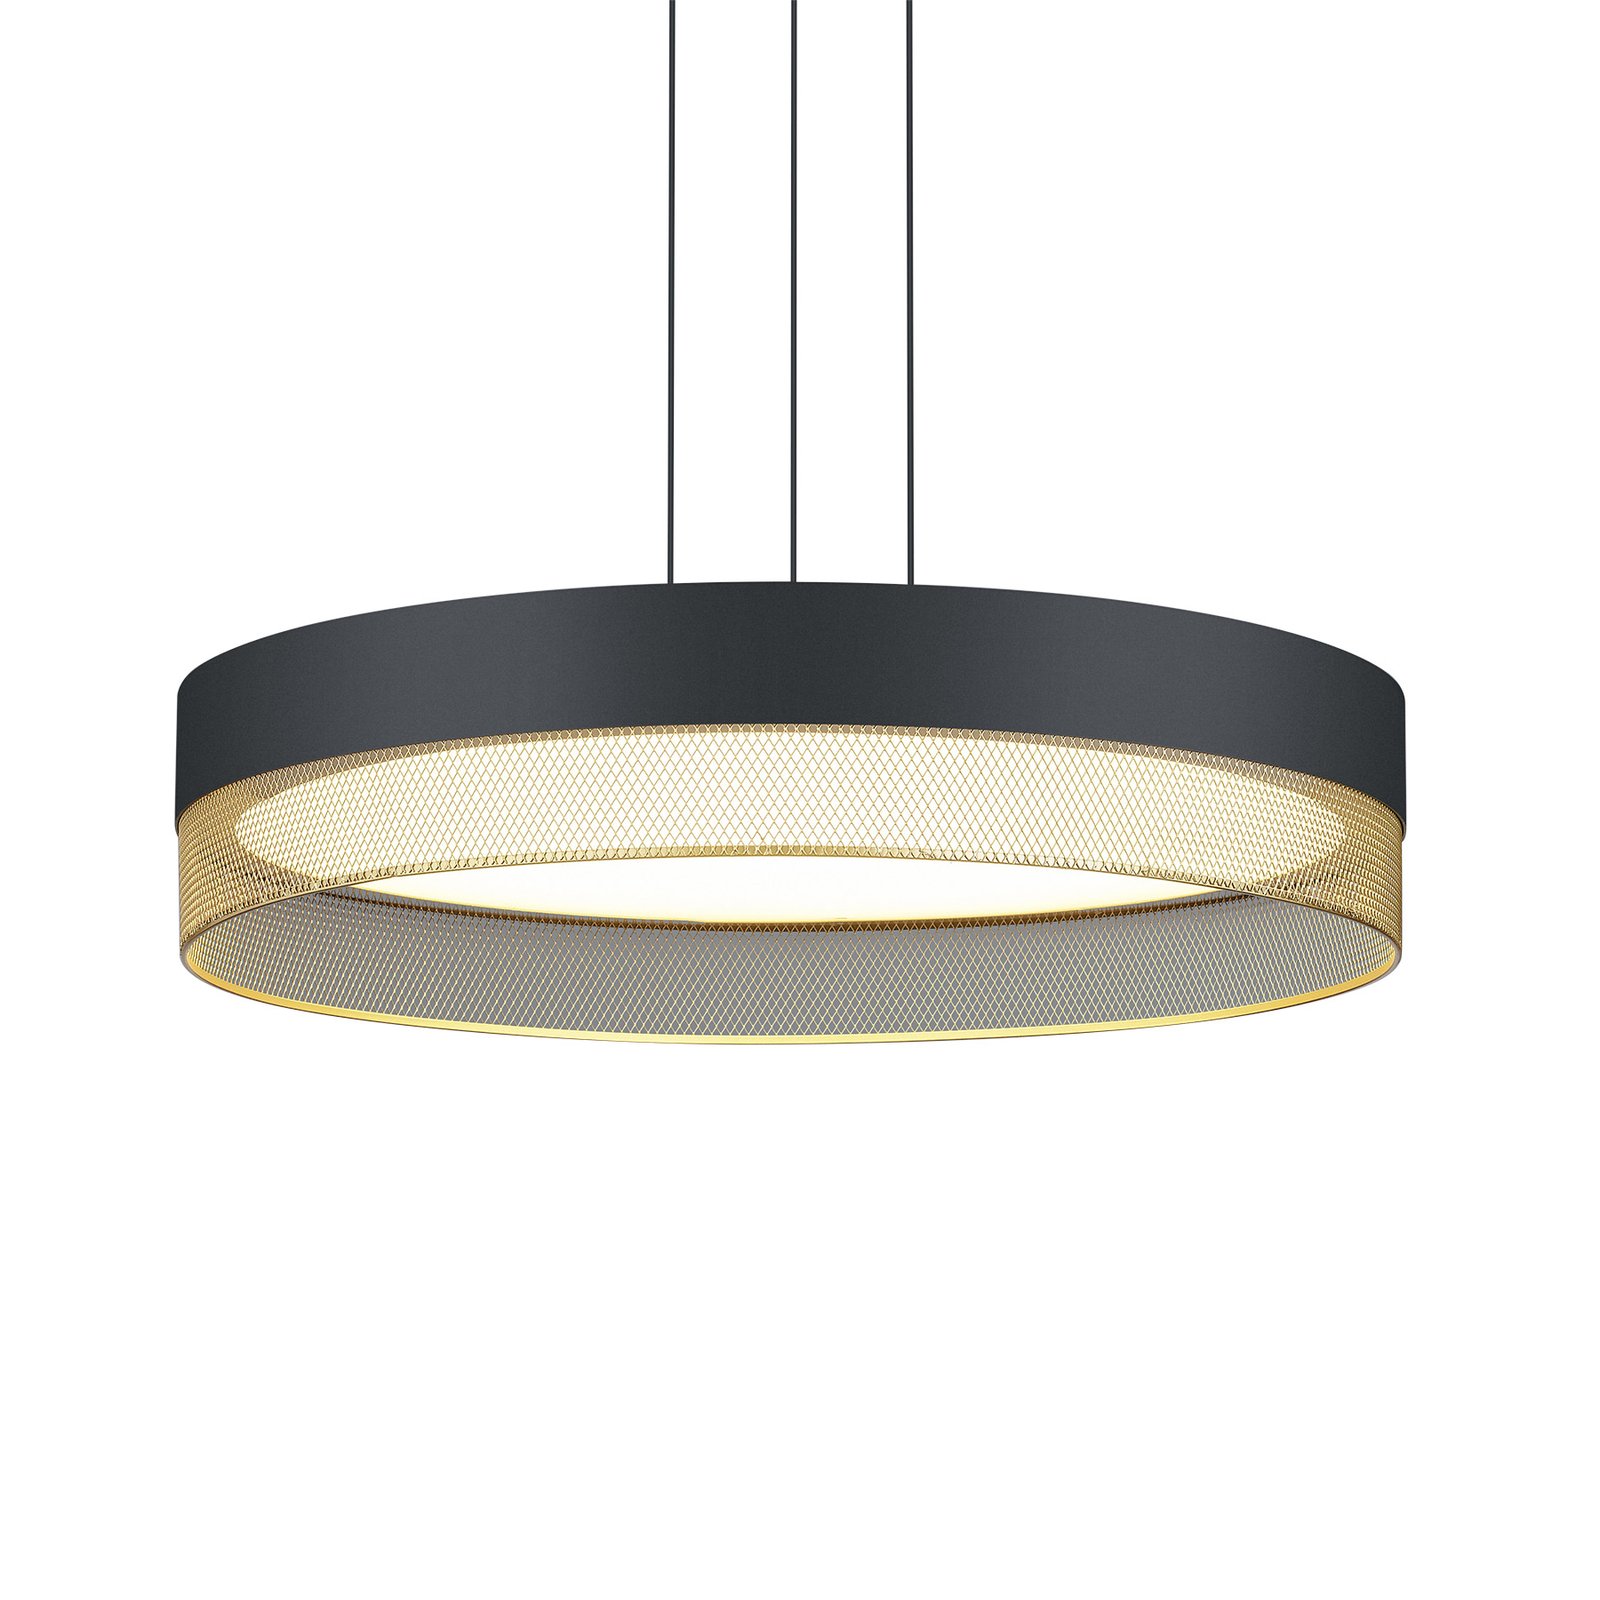 Mesh LED pendant light, Ø 45 cm, black/gold